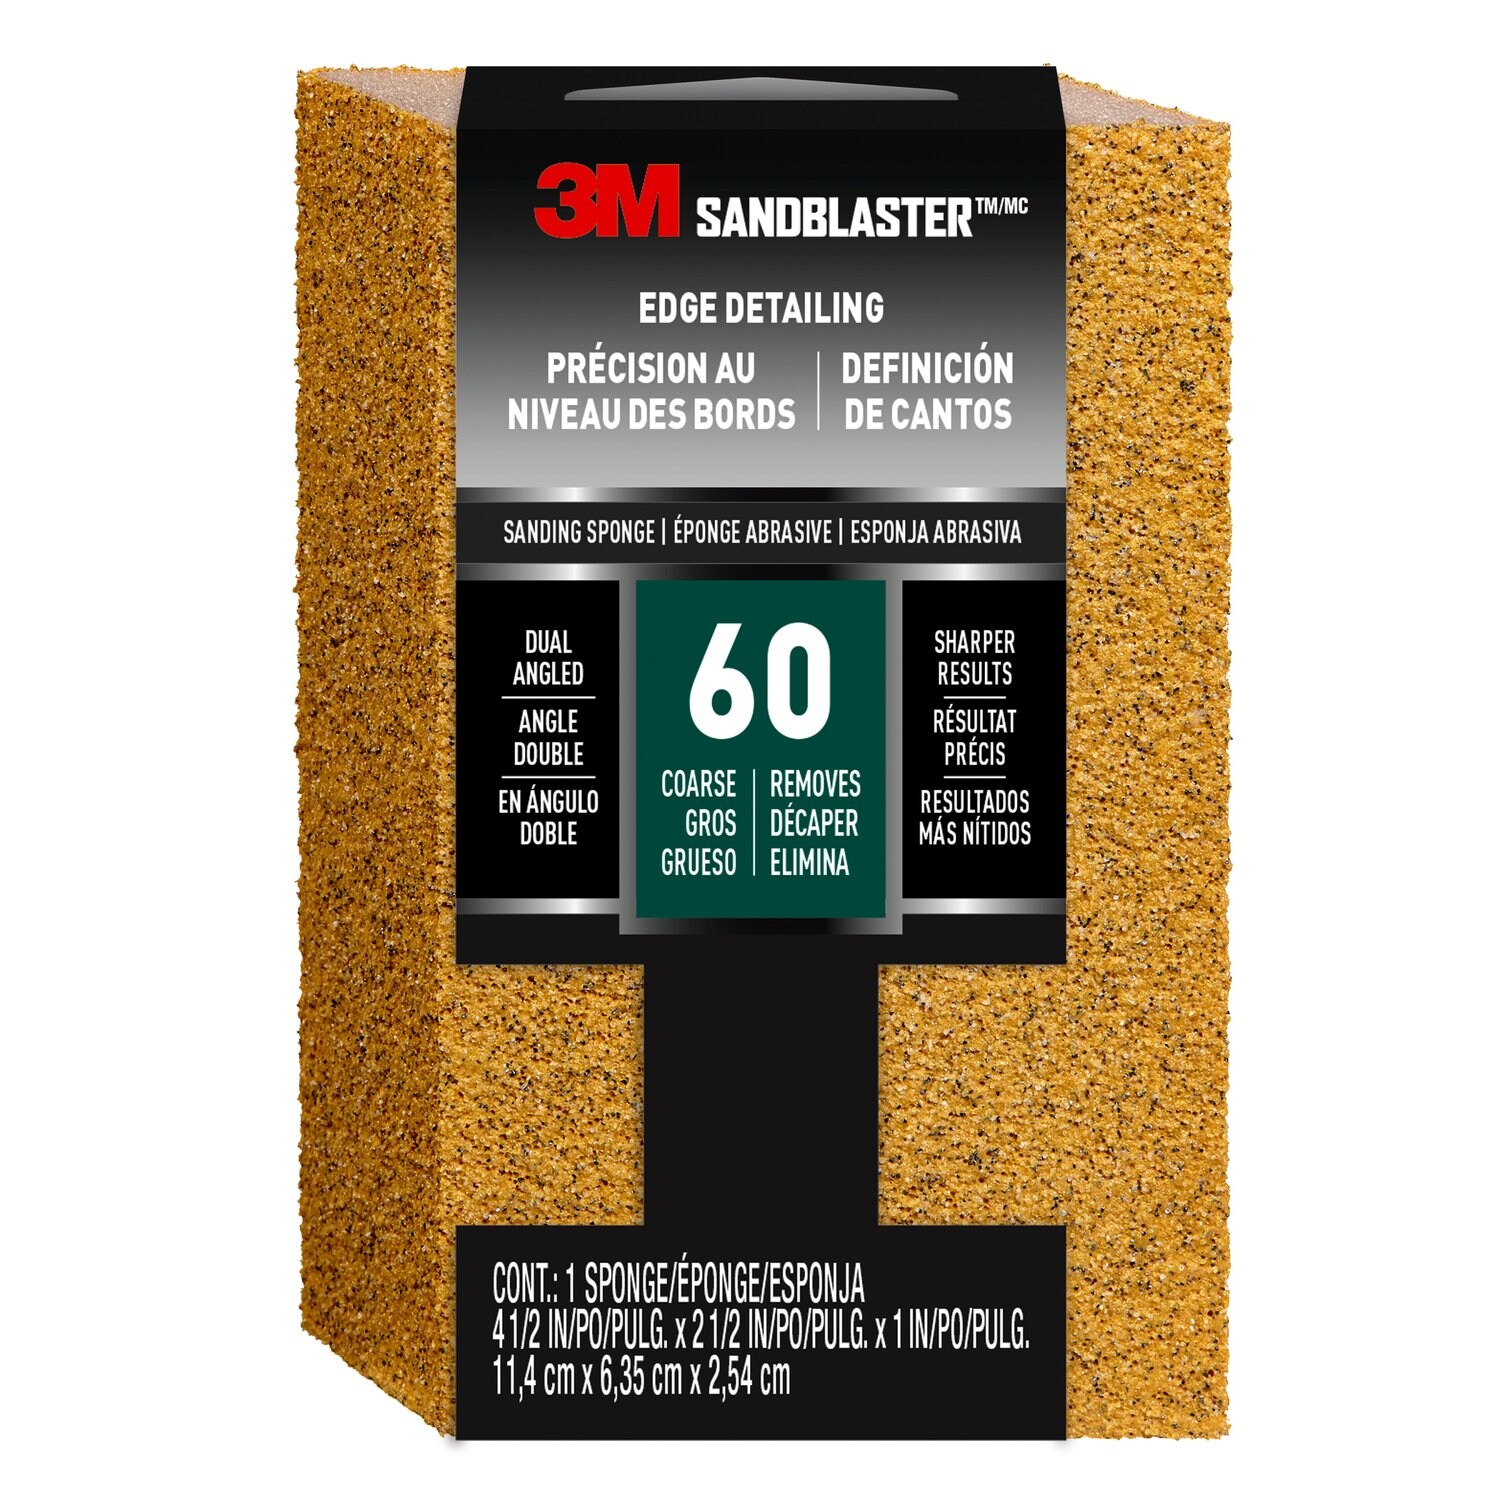 7100266210 - 3M SandBlaster Edge Detailing Sanding Sponge 9558, 60 grit, 4 1/2 in x 2 1/2 x 1 in, 1/pk